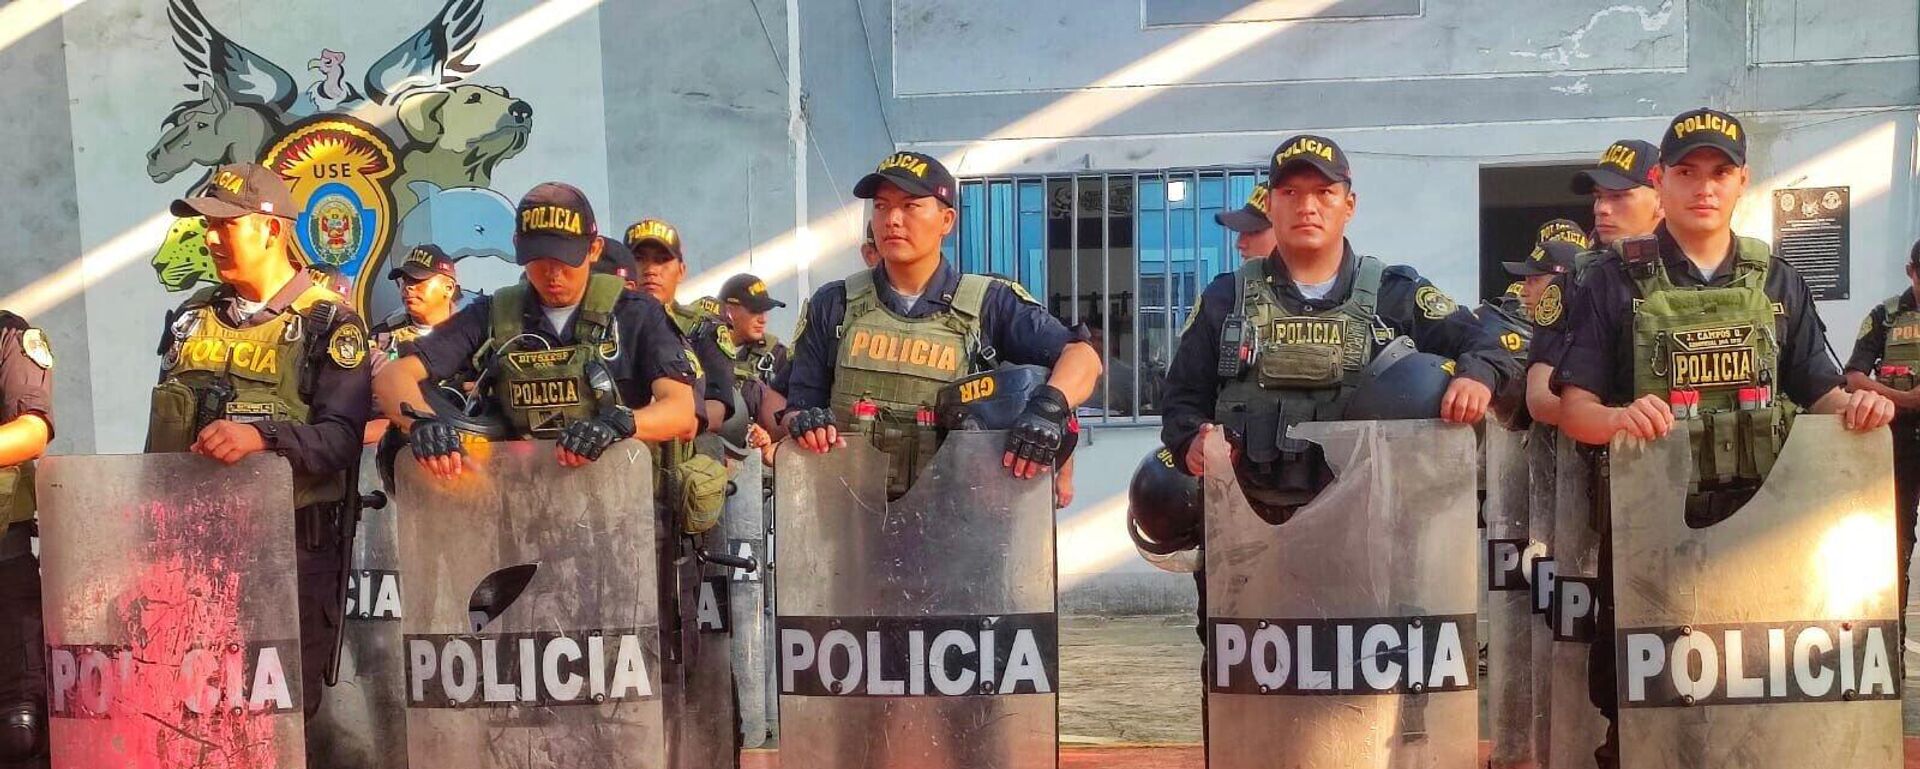 Elementos policiacos peruanos exhiben afectaciones a su equipo derivadas de las protestas. - Sputnik Mundo, 1920, 03.02.2023